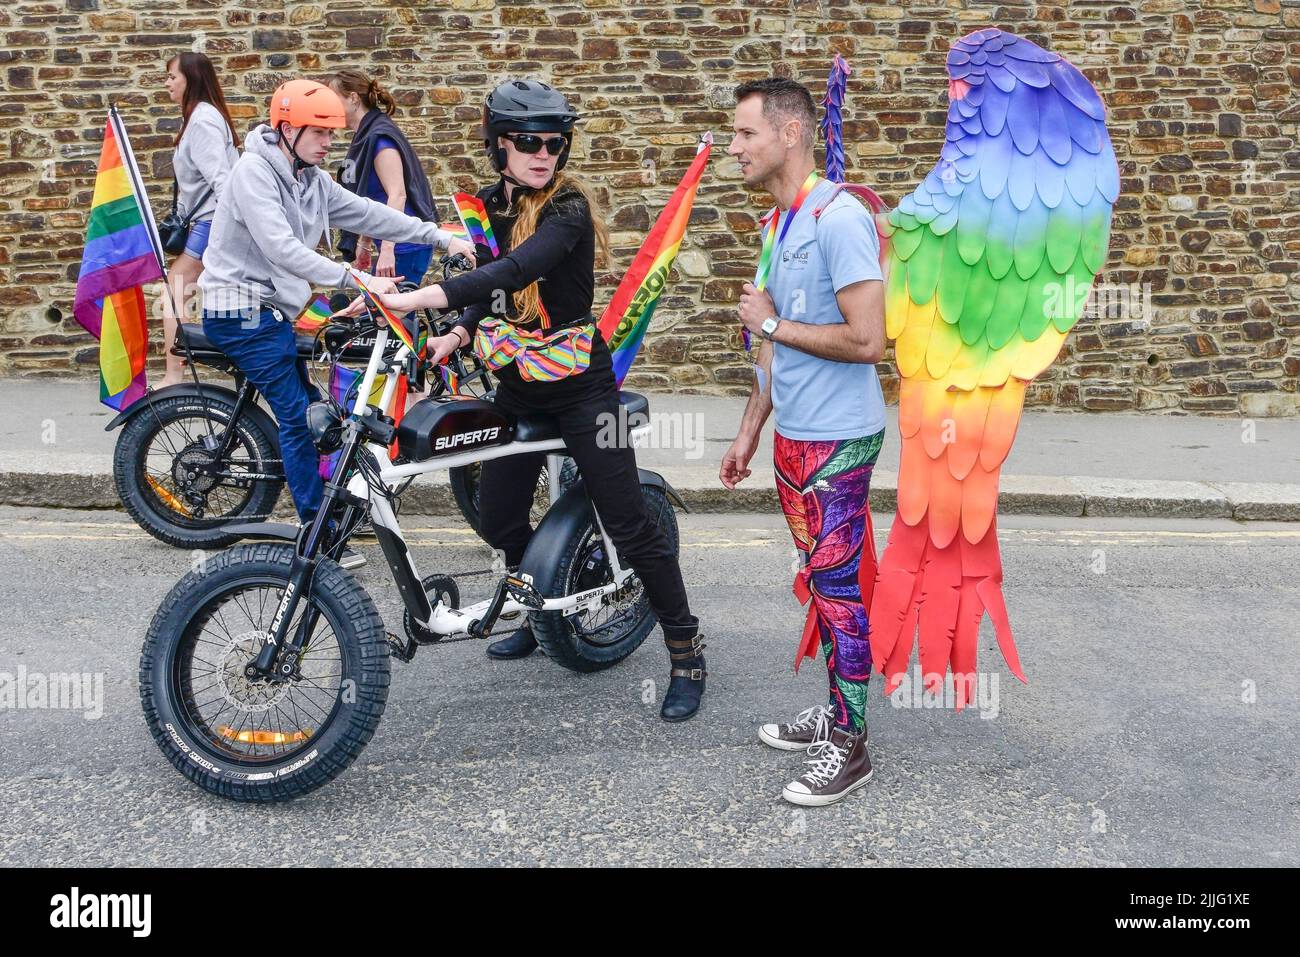 Die Fahrer nutzen elektrische Super 73-Fahrräder zu Beginn der farbenfrohen Cornwall Prides Pride Parade im Zentrum von Newquay in Großbritannien. Stockfoto